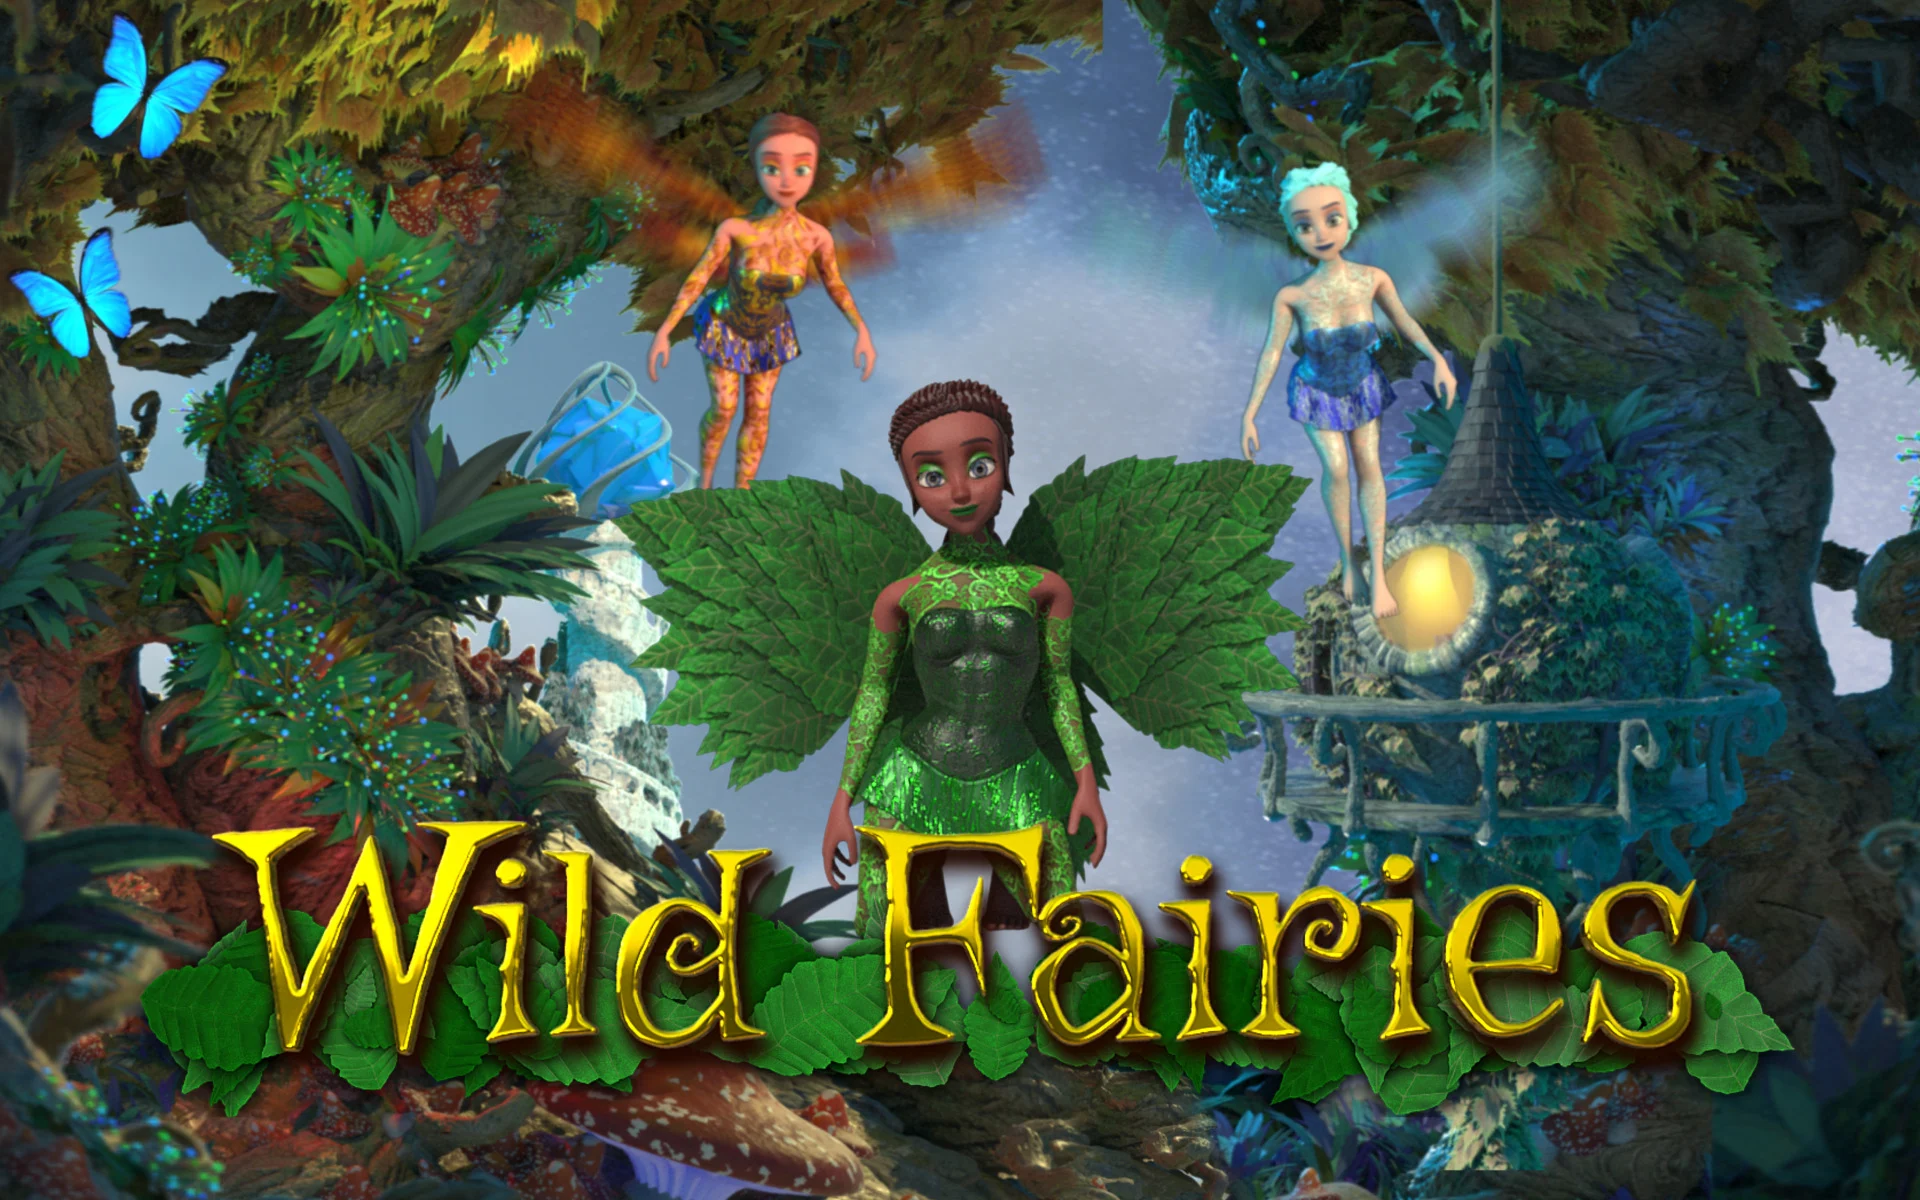 Play Wild Fairies on Starcasino.be online casino